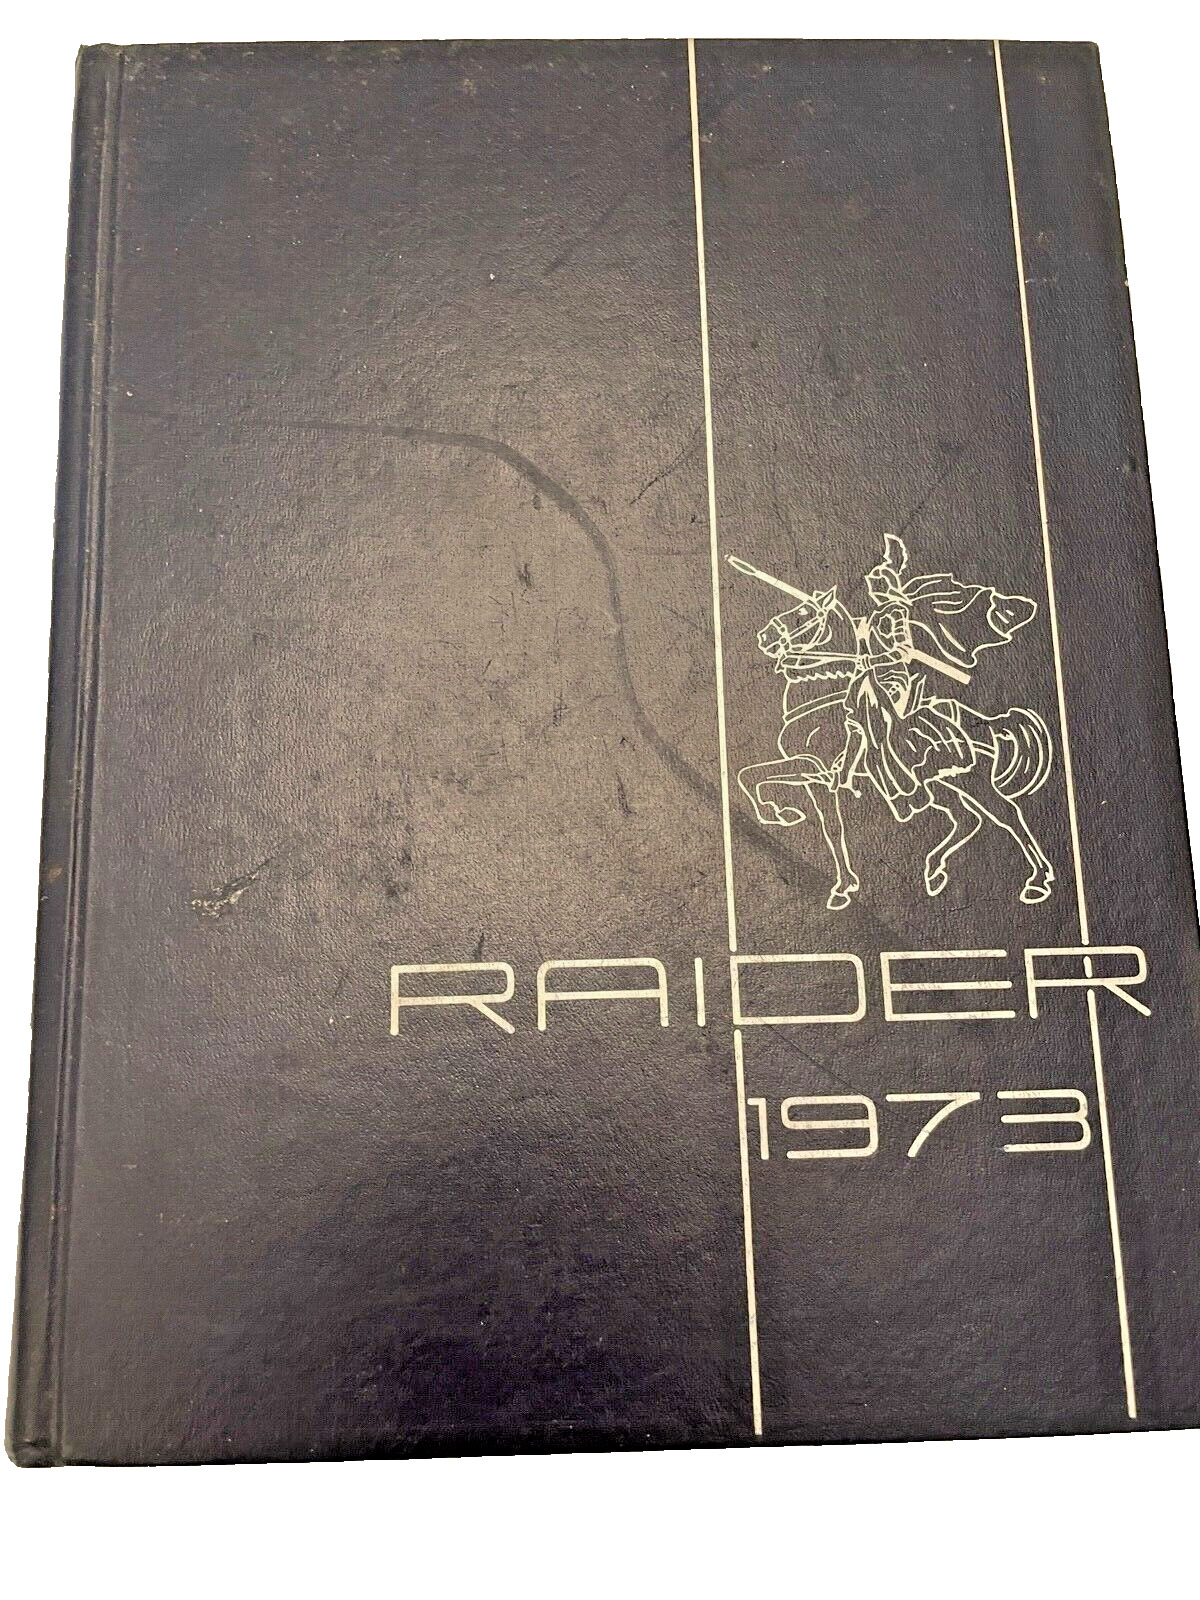 Yearbook 1973 Somerset High School Massachusetts Annual The Raider